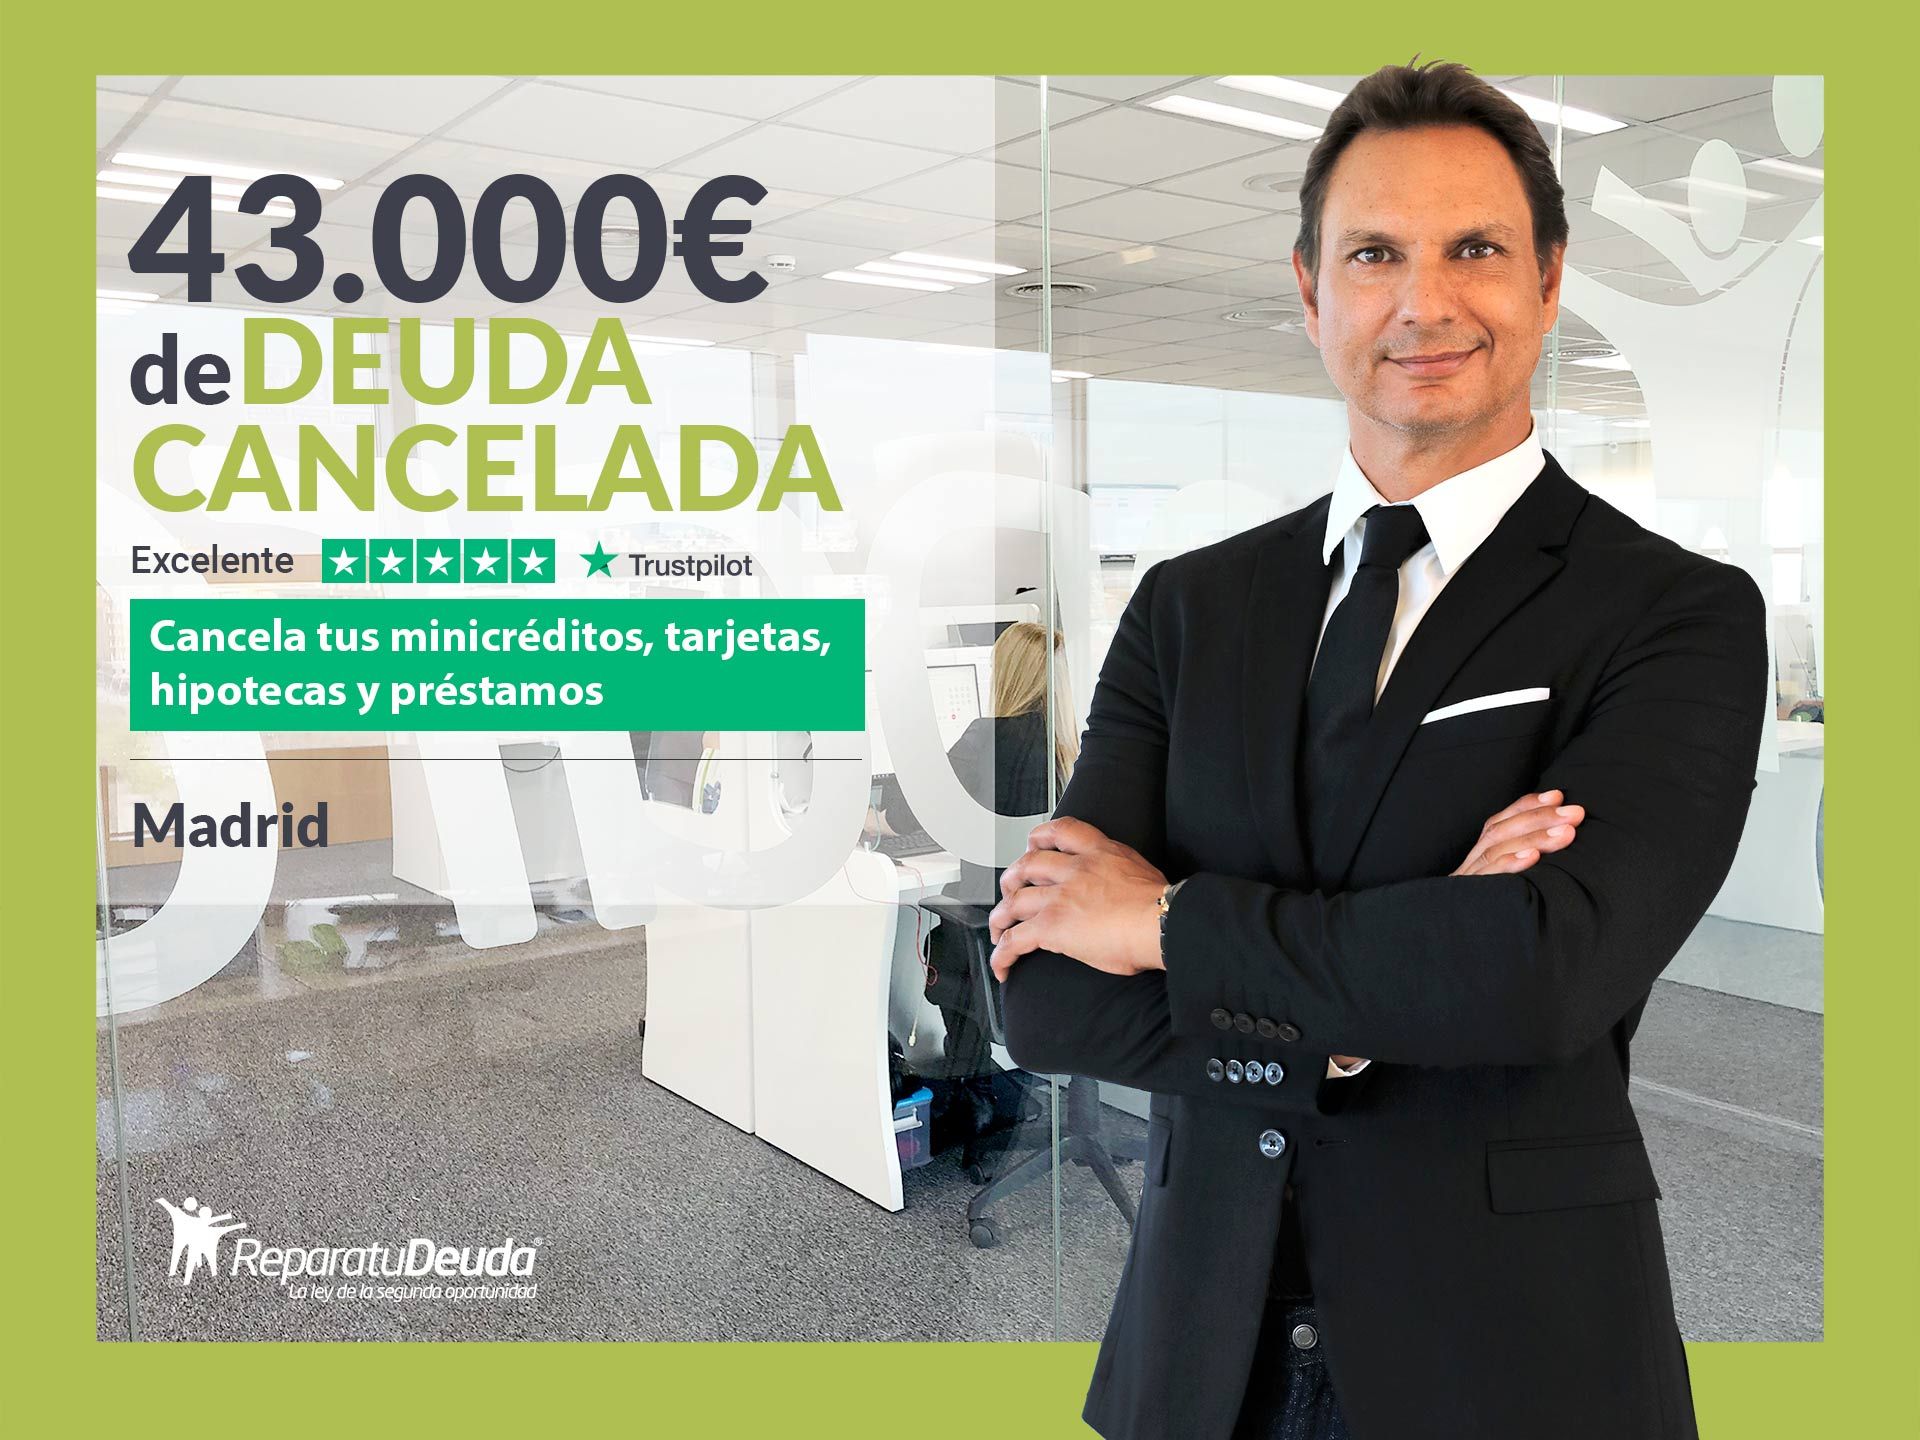 Repara tu Deuda Abogados cancela 43.000? en Madrid con la Ley de Segunda Oportunidad